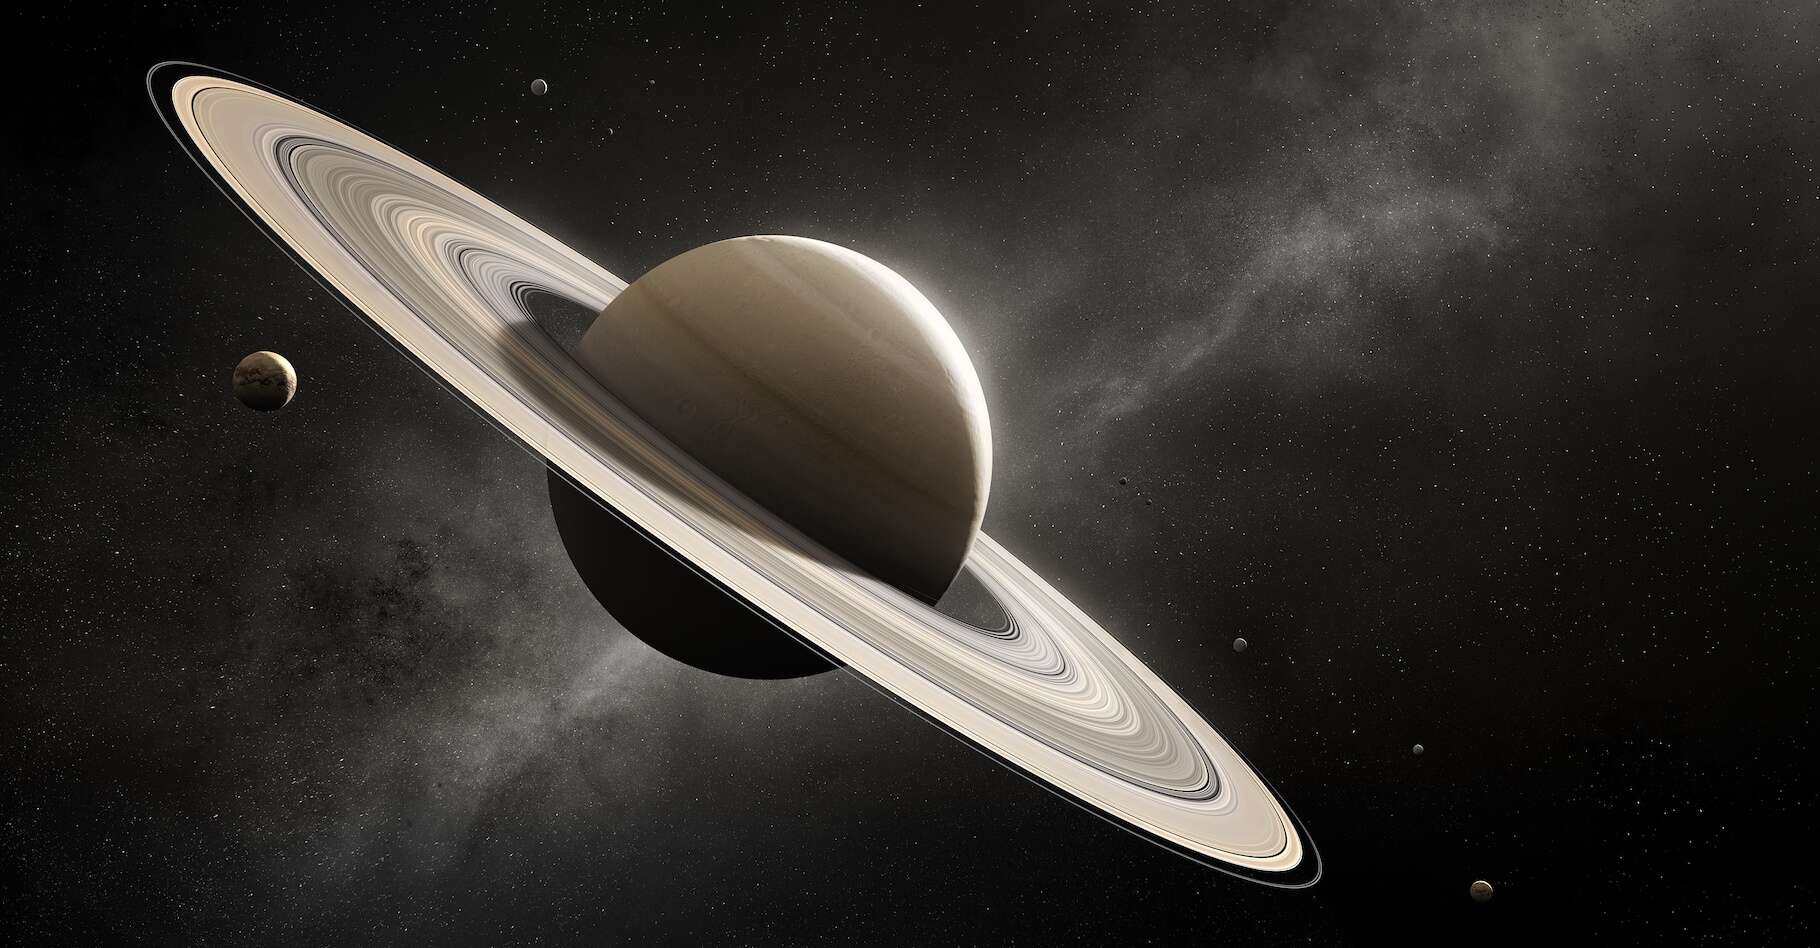 ¡Los anillos de Saturno desaparecerán en 2025!